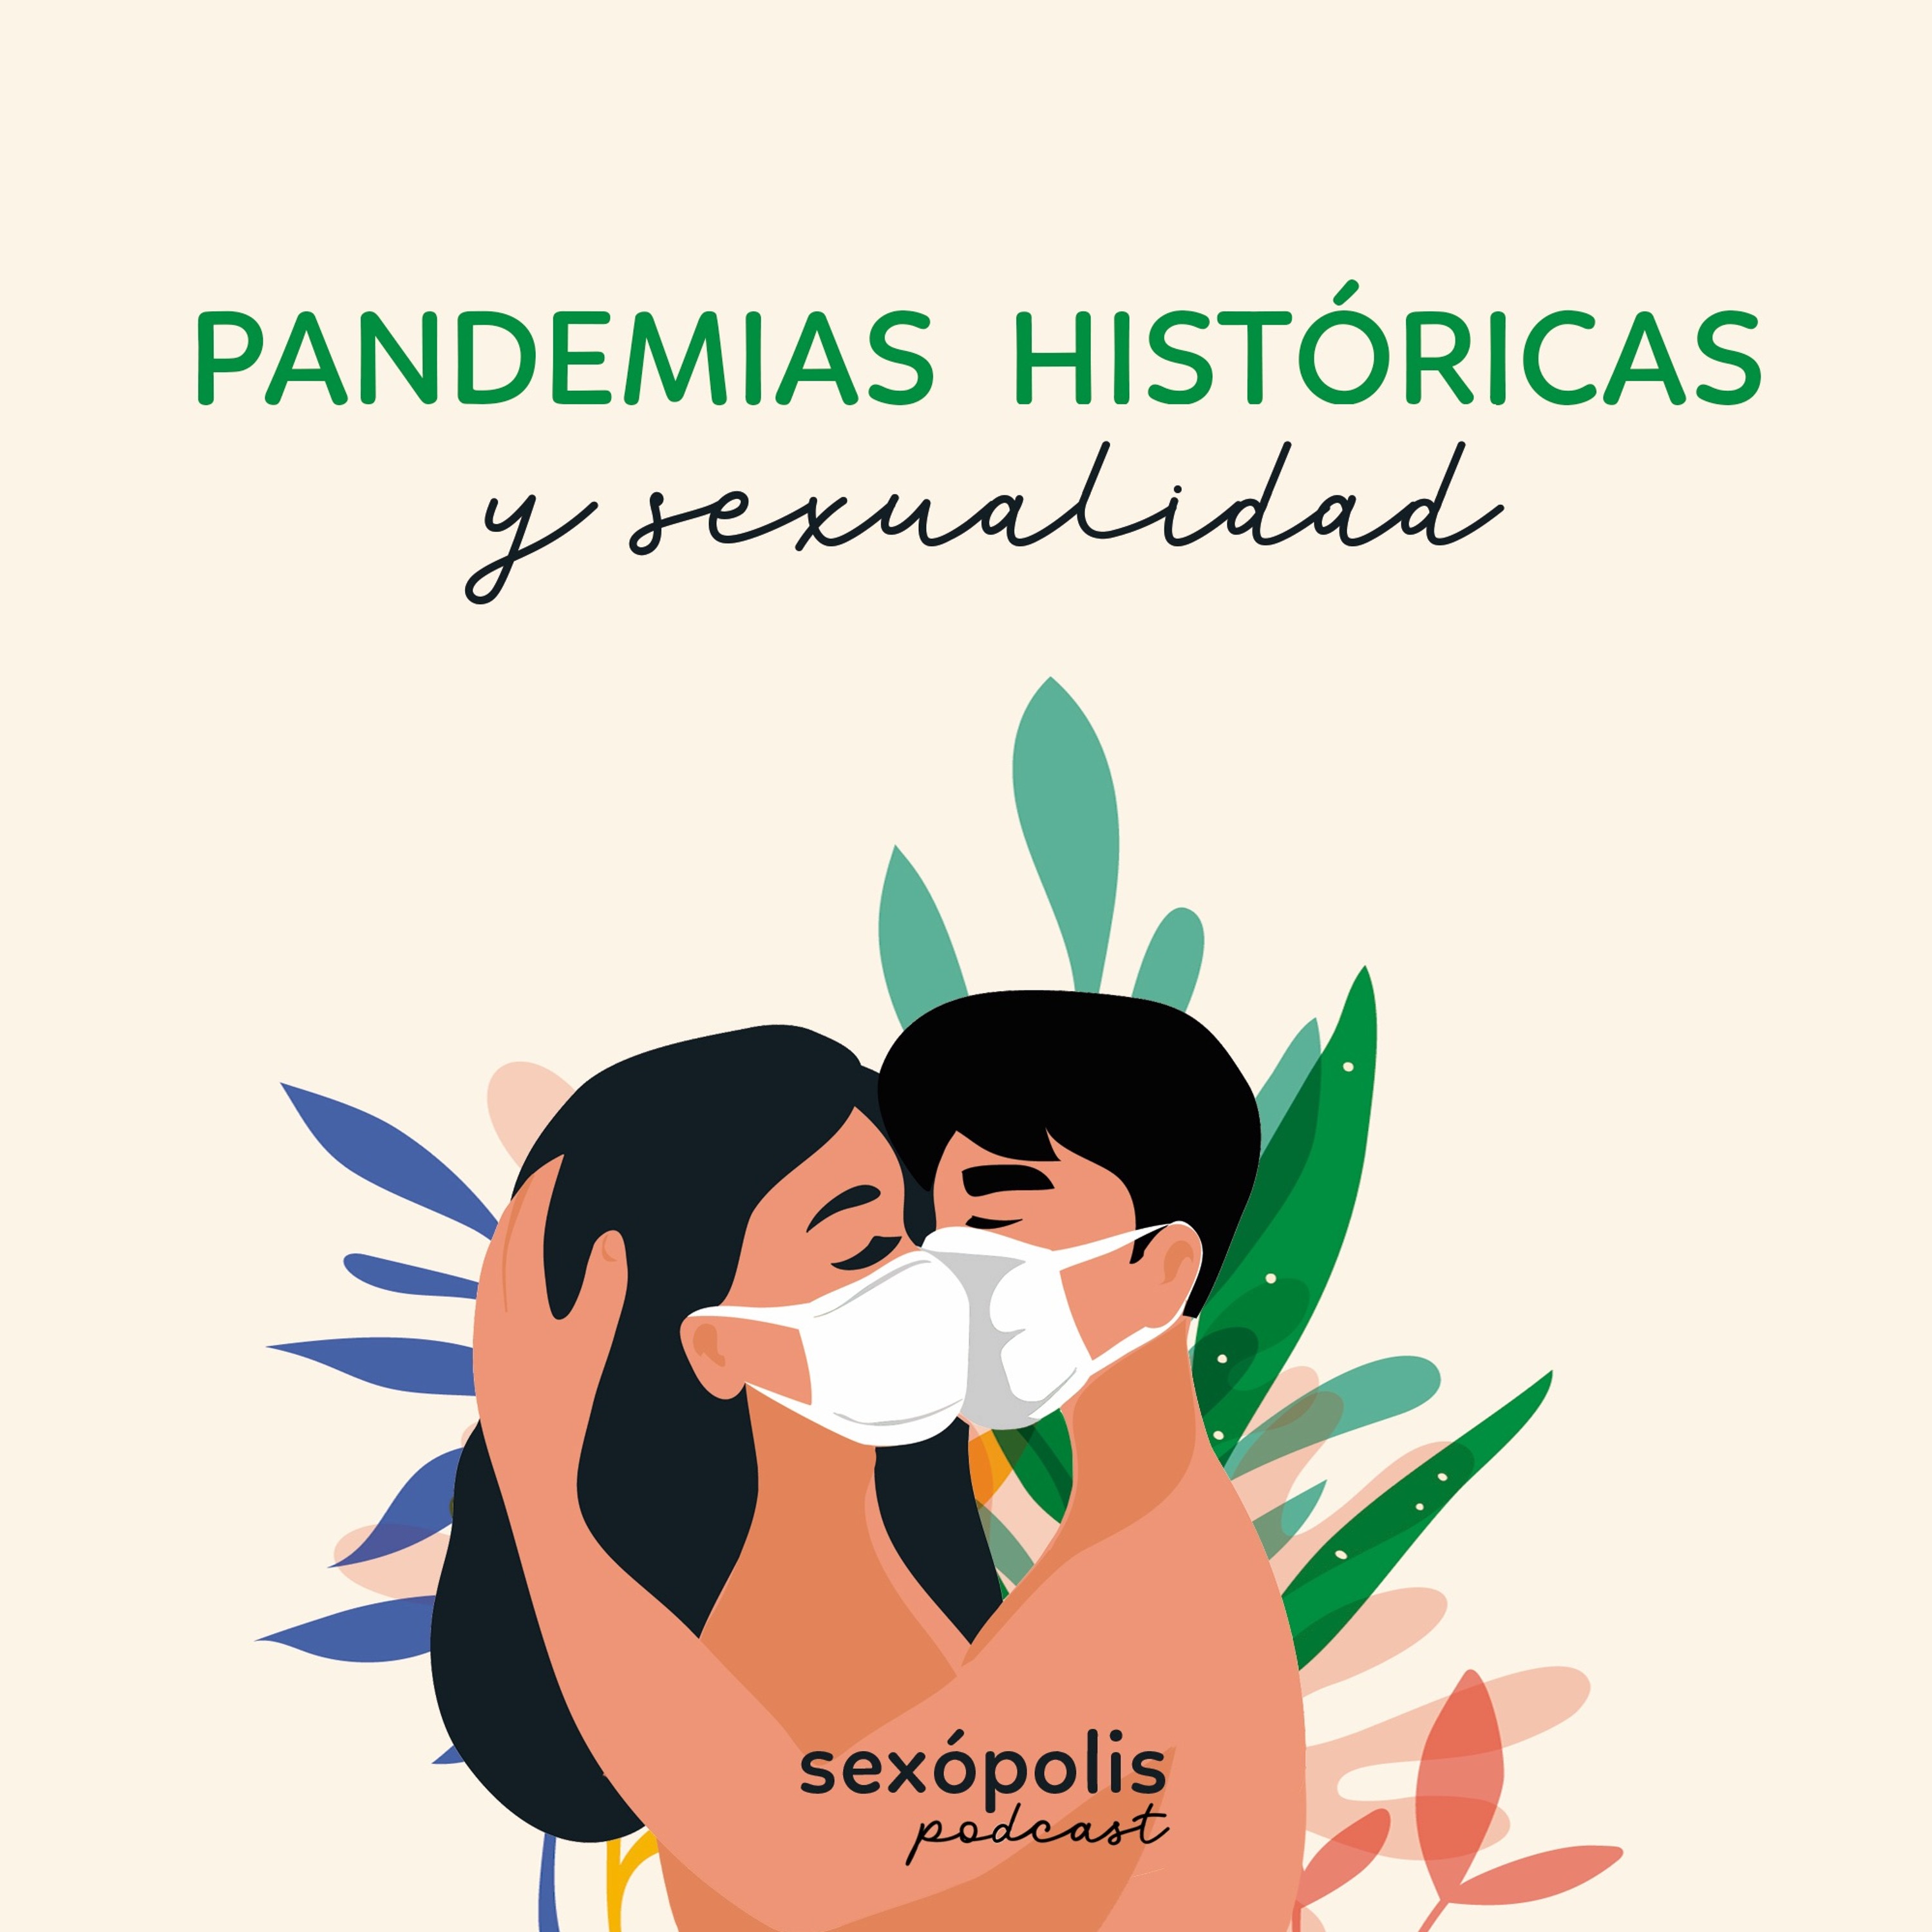 Pandemias históricas y sexualidad